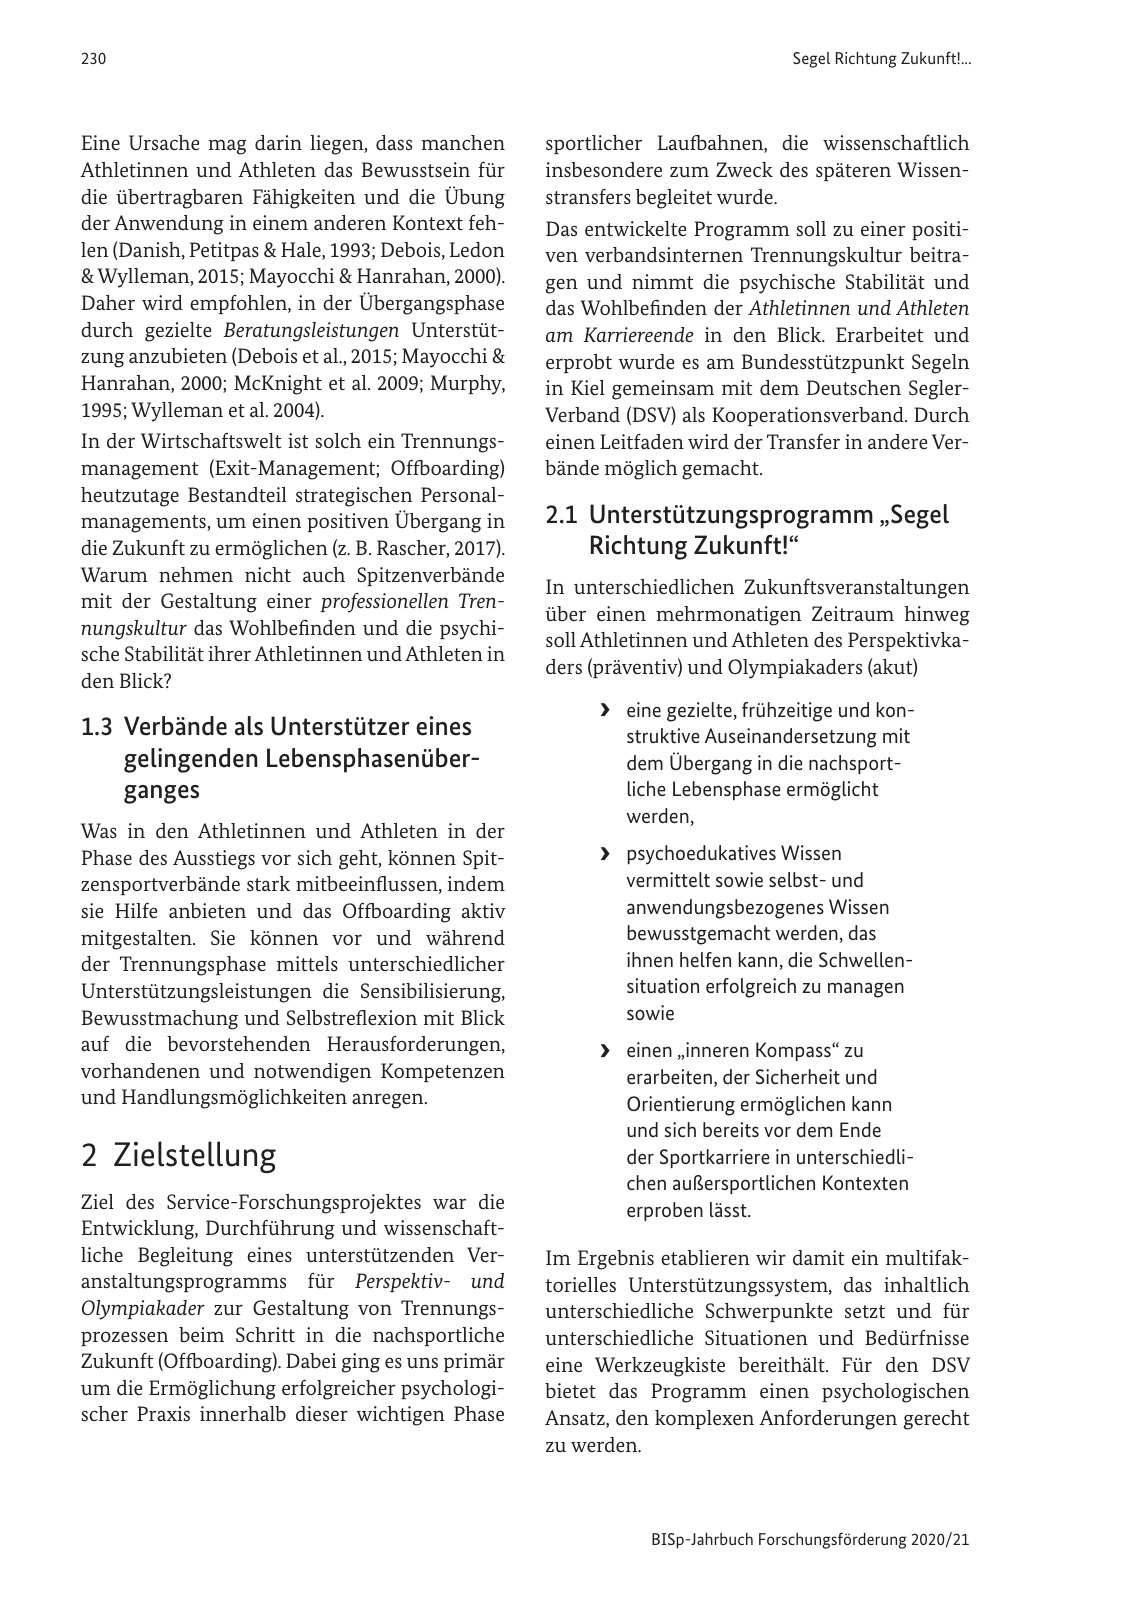 Vorschau BISp-Jahrbuch 2020/21 Seite 232